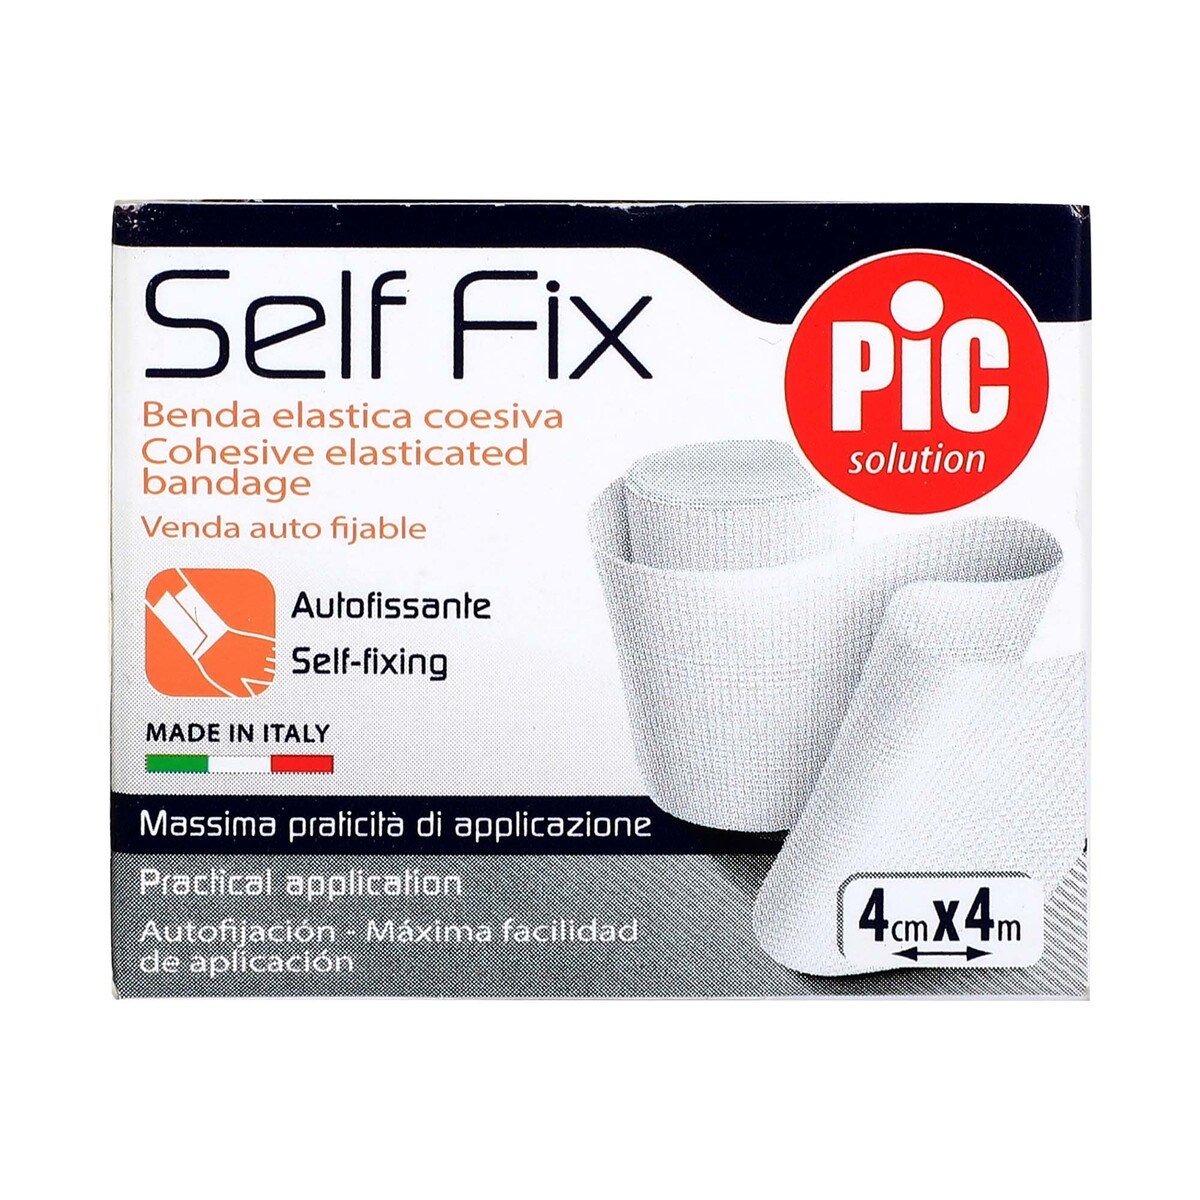 Pic Self Fix Cohesive Elasticated Bandage, 4 cm x 4 m